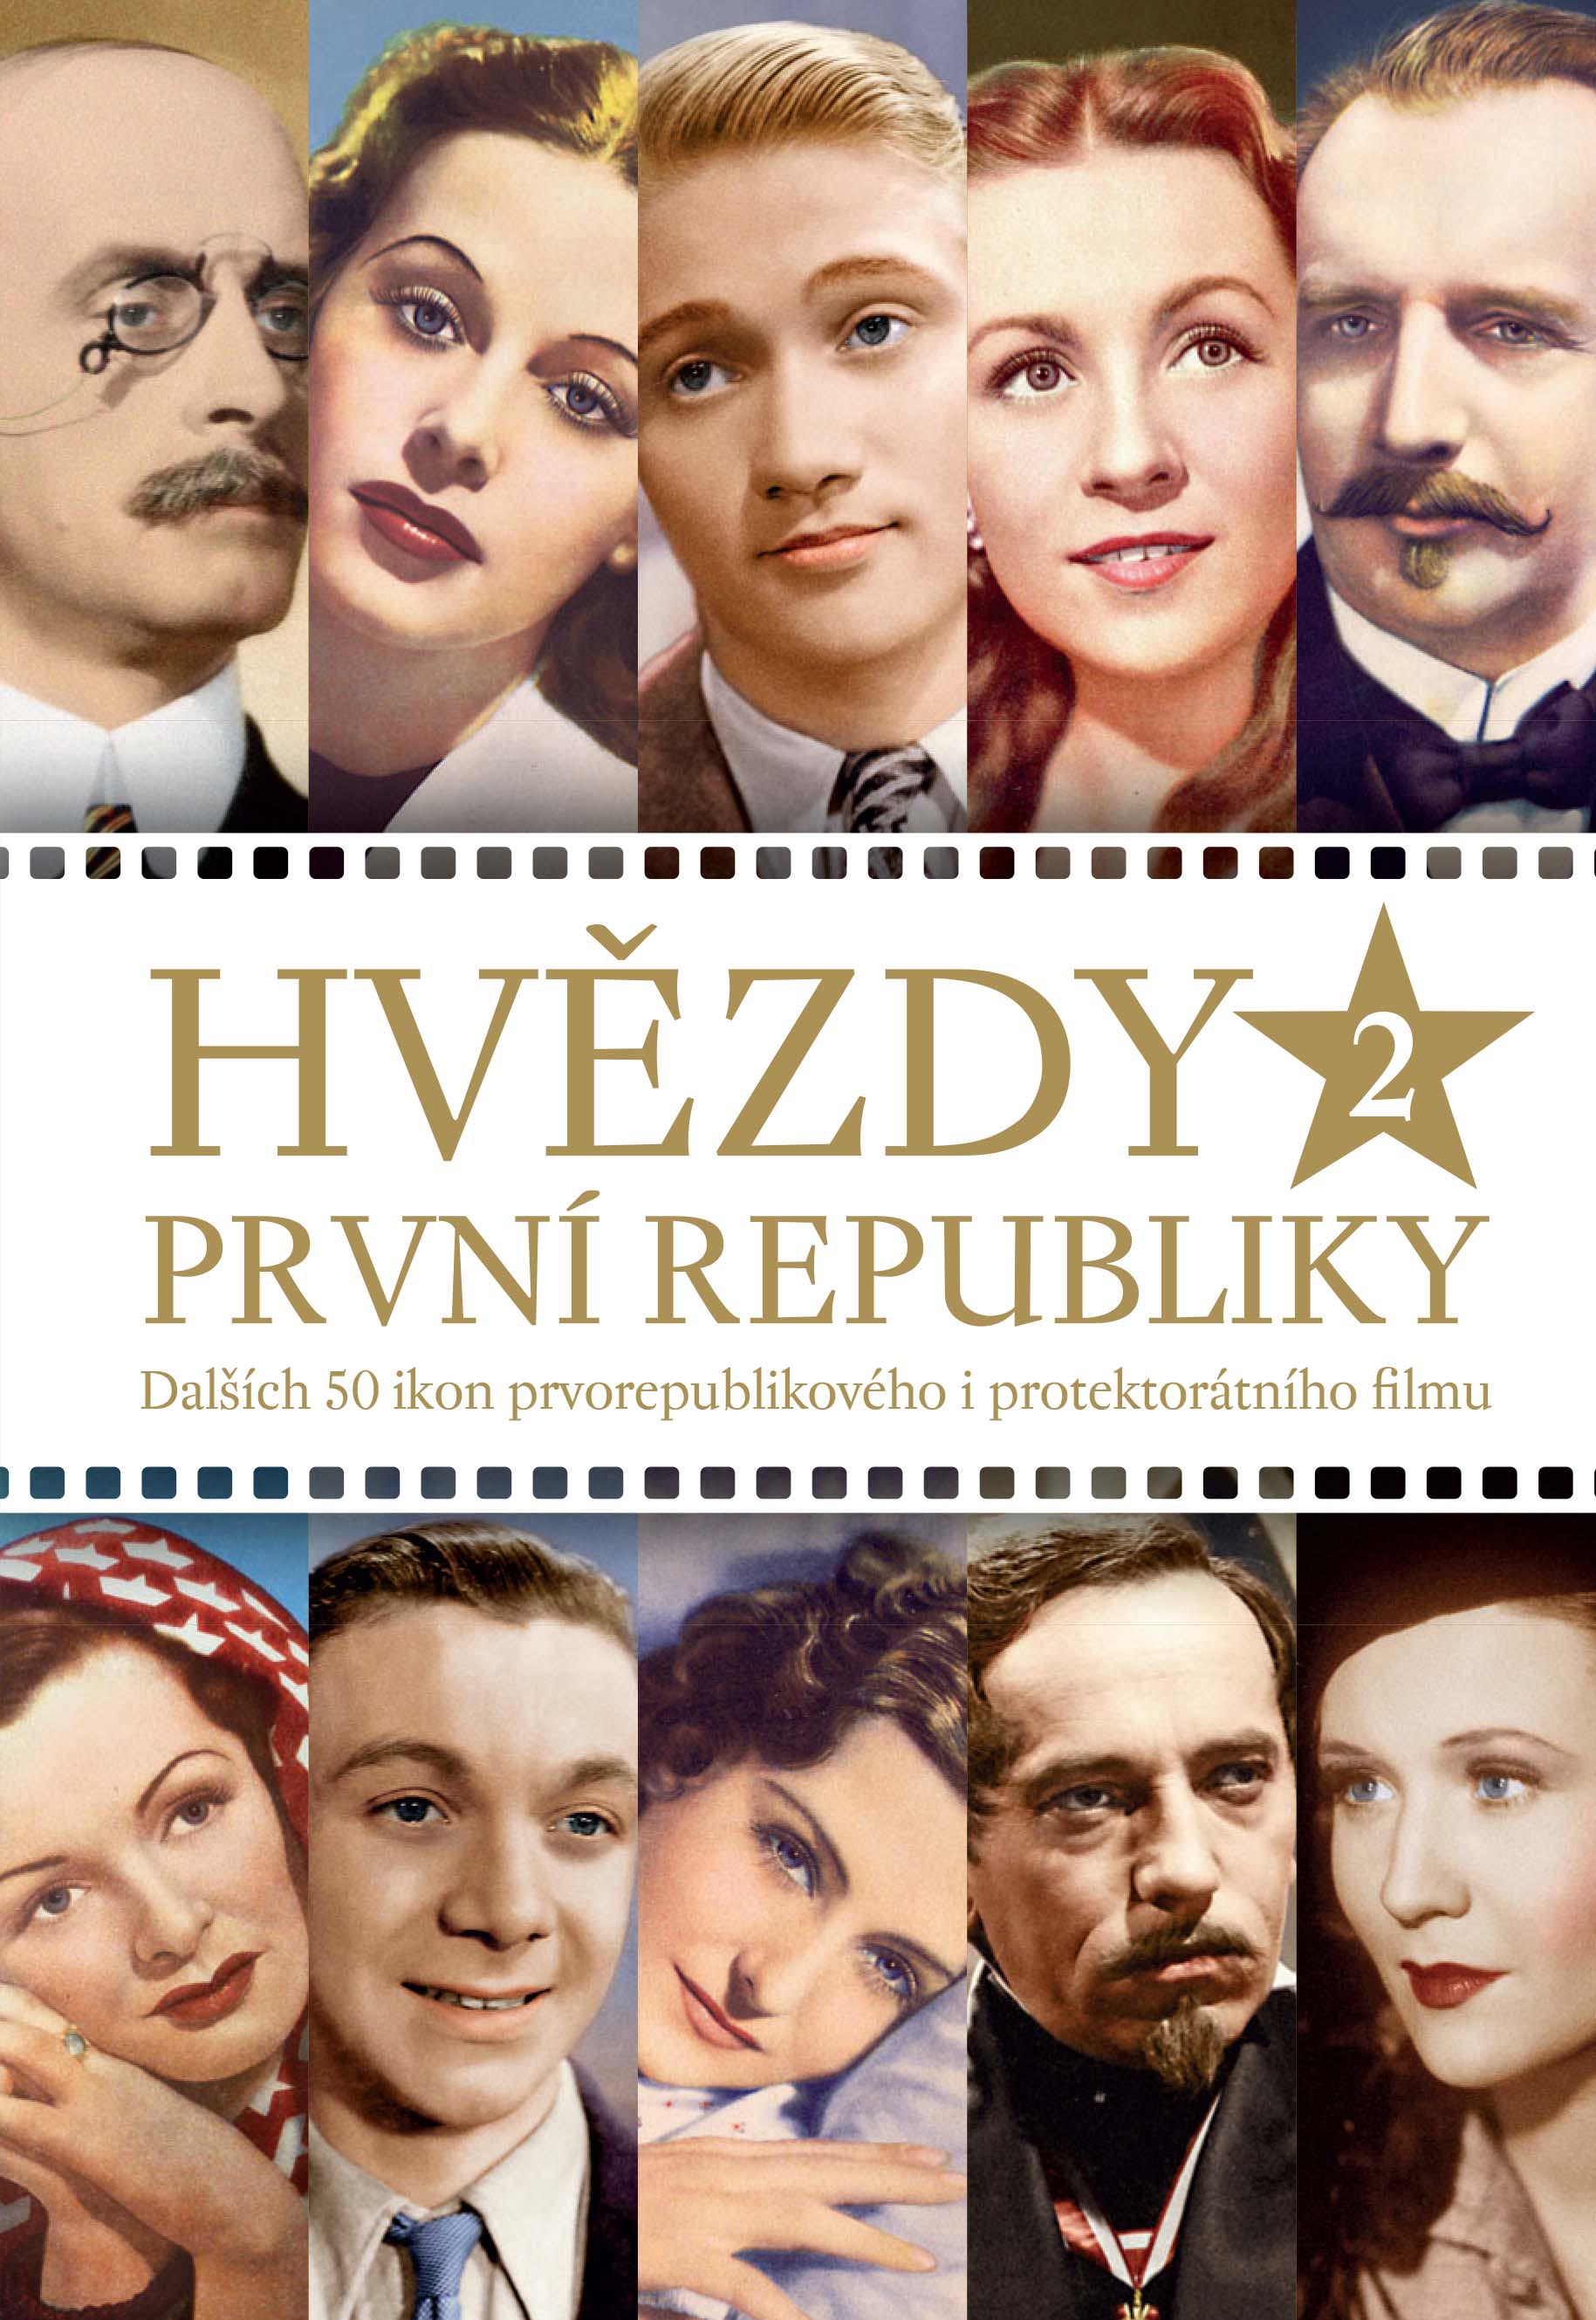 Hvězdy první republiky 2 (druhé rozšířené vydání) - Dalších 50 filmových ikon z doby První republiky a protektorátu